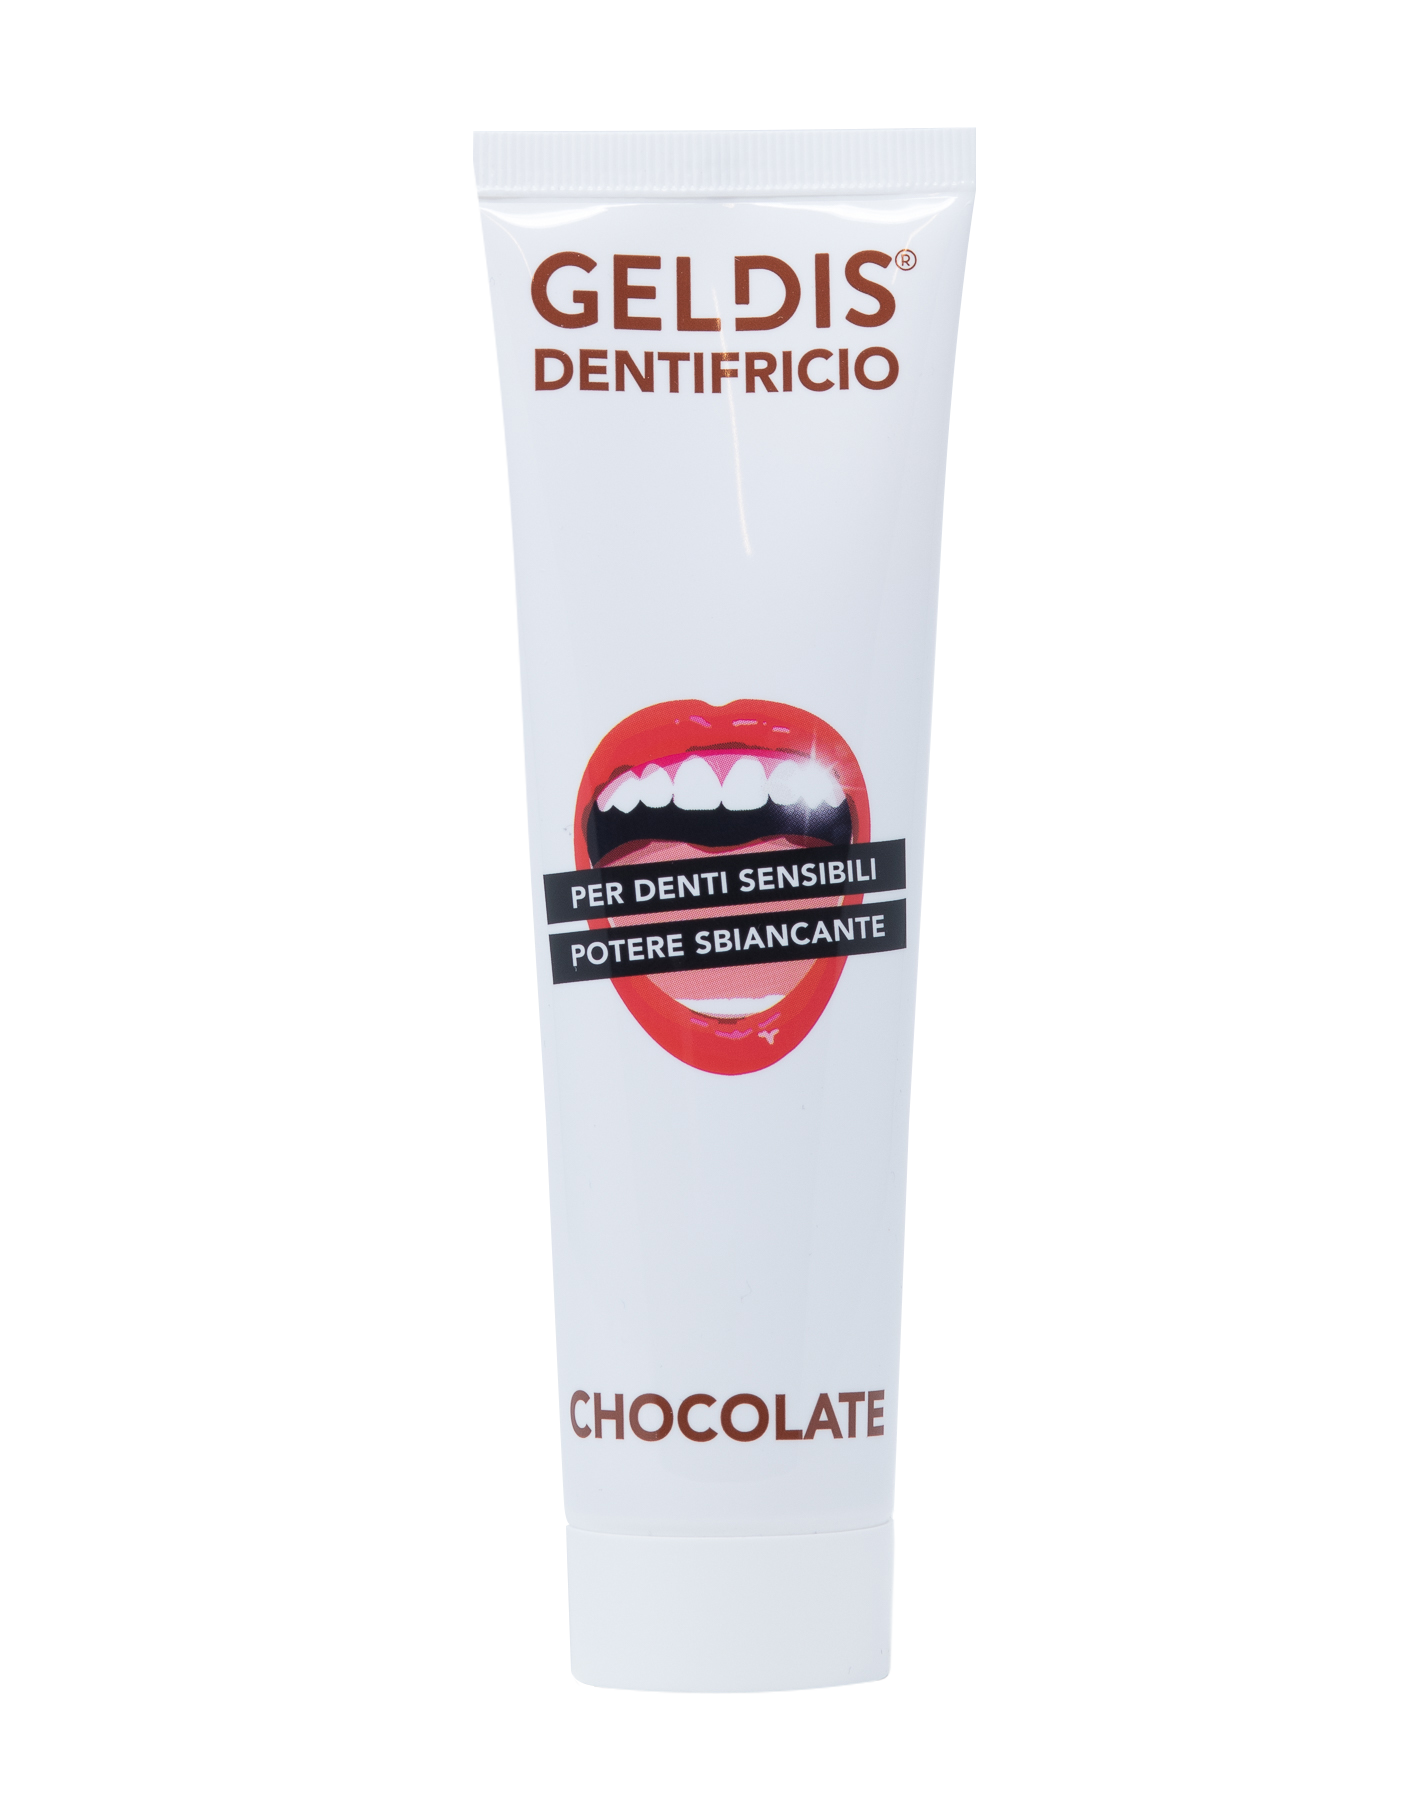 Geldis Dentifricio Sbiancante per Denti Sensibili al Cioccolato - 100 ml